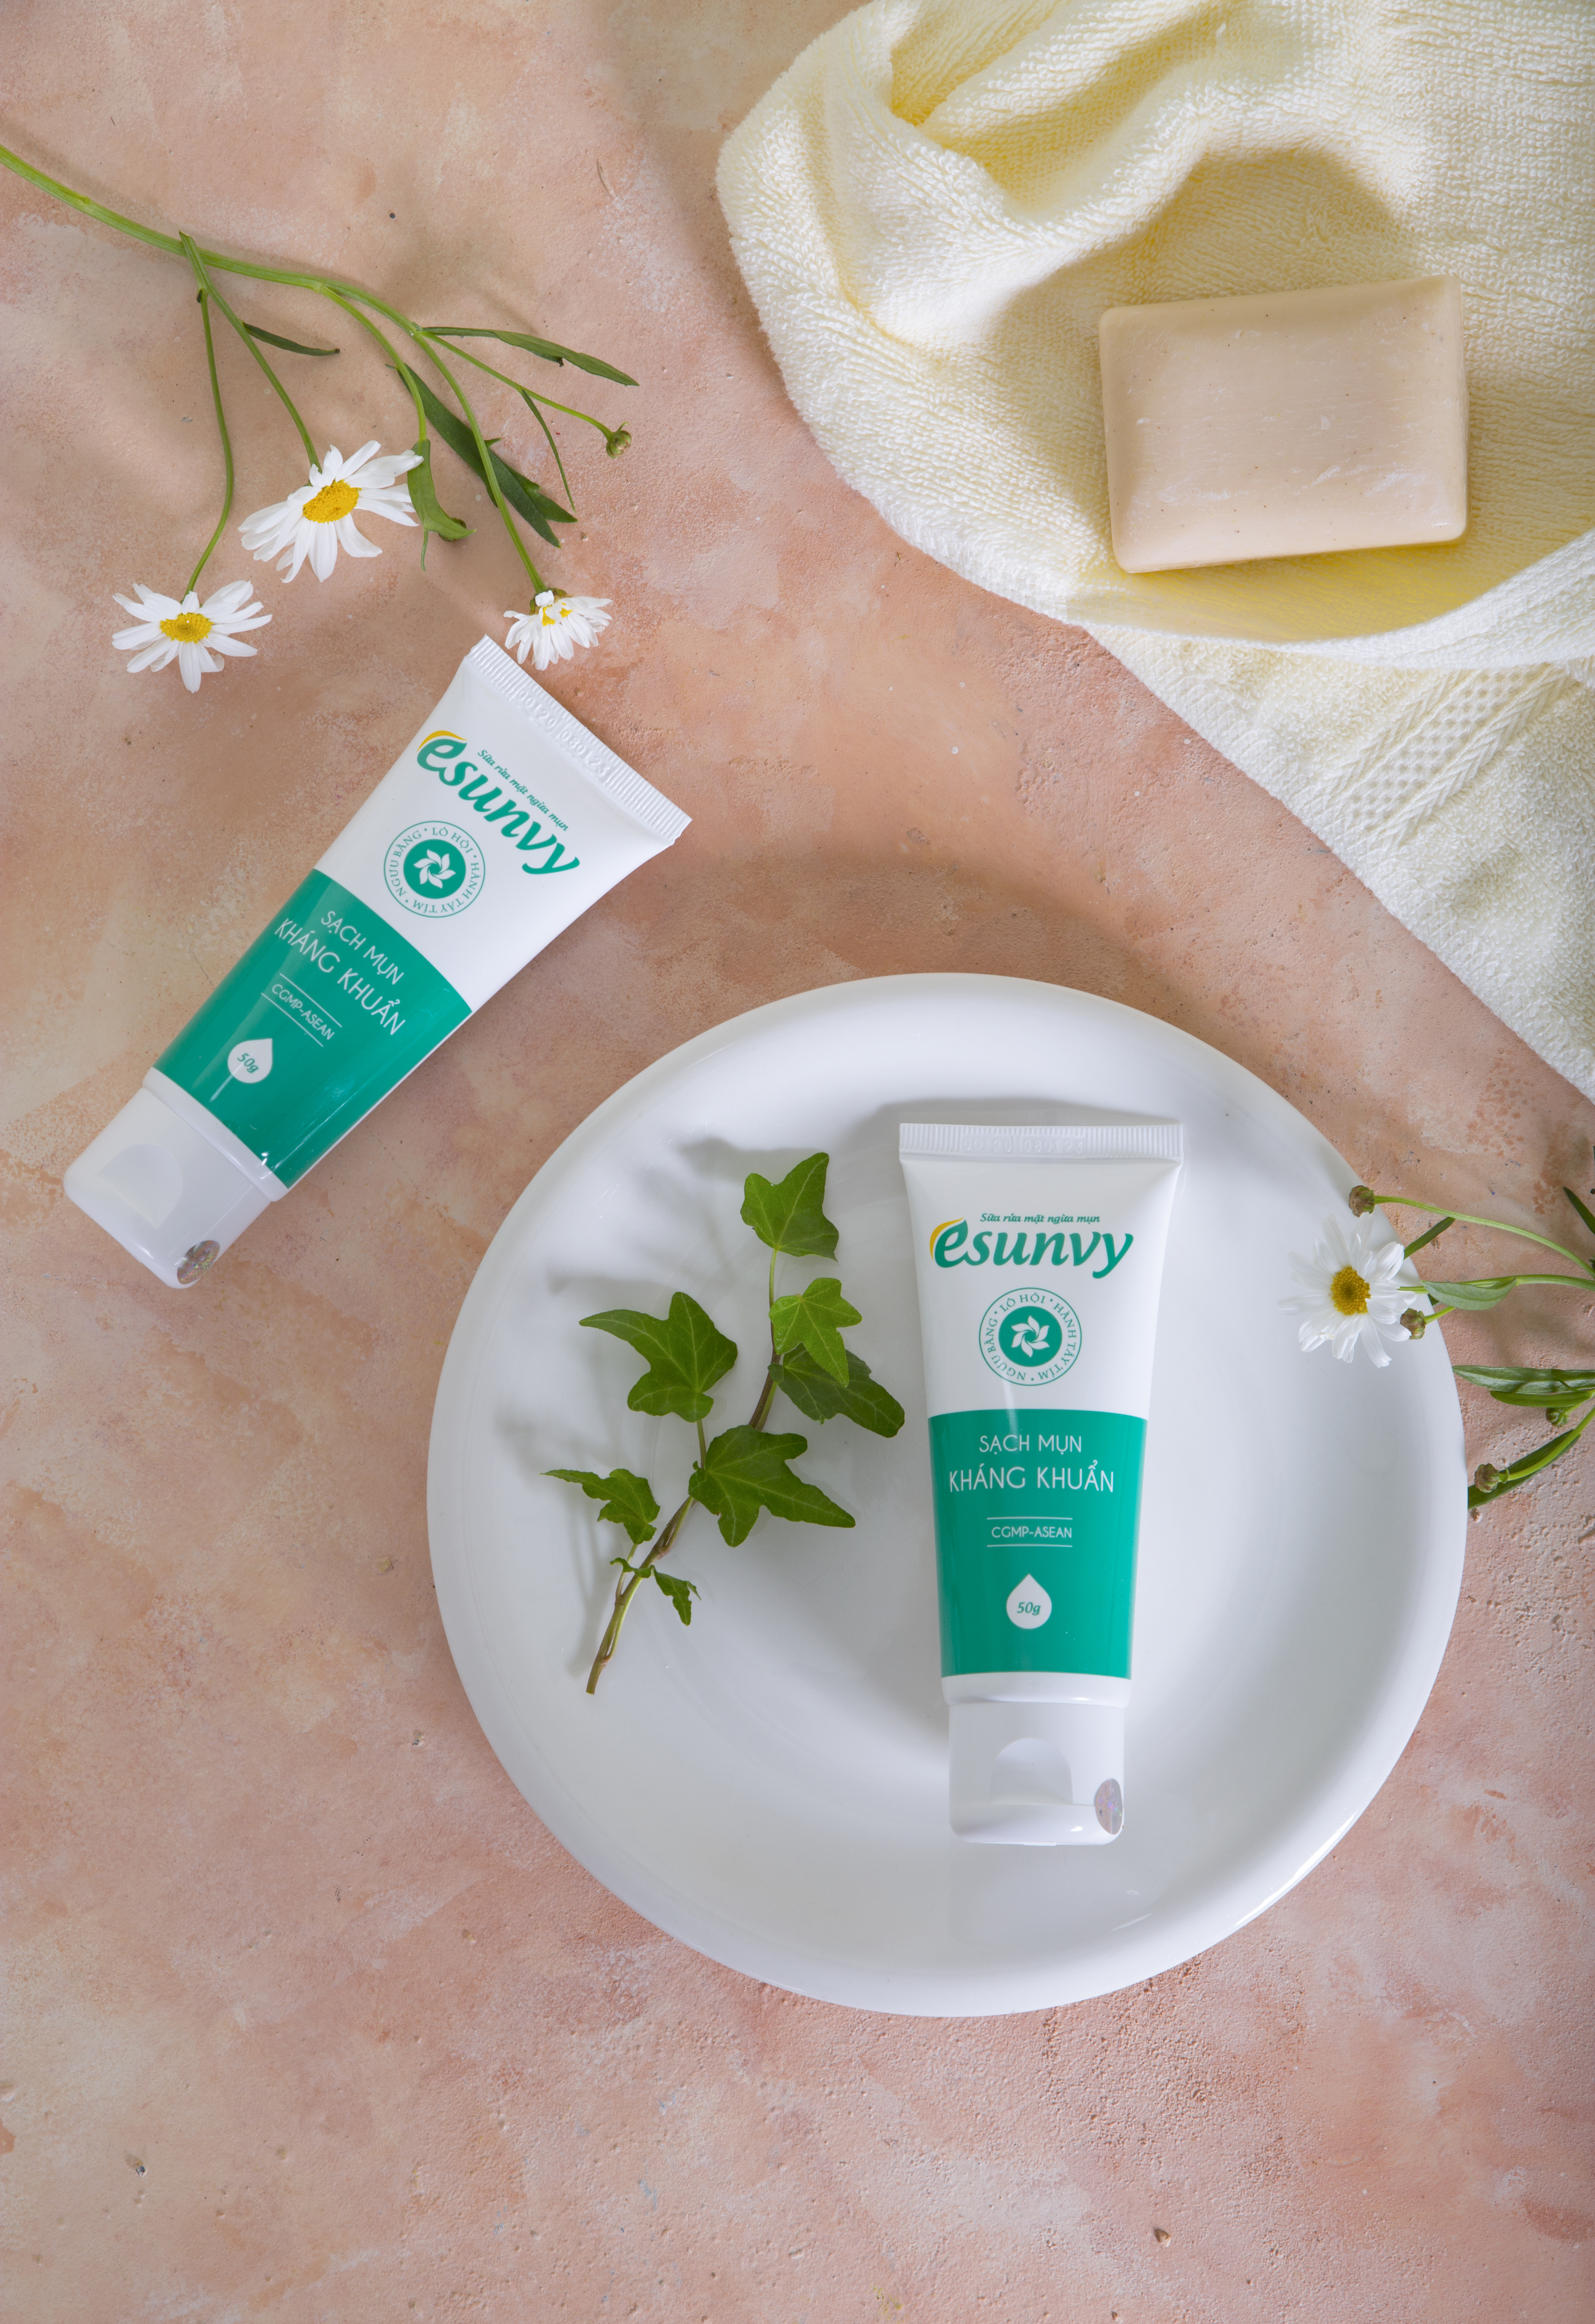 Sữa rửa mặt Esunvy - kiểm soát bã nhờn - sạch mụn - kháng khuẩn - Tuýp 50g